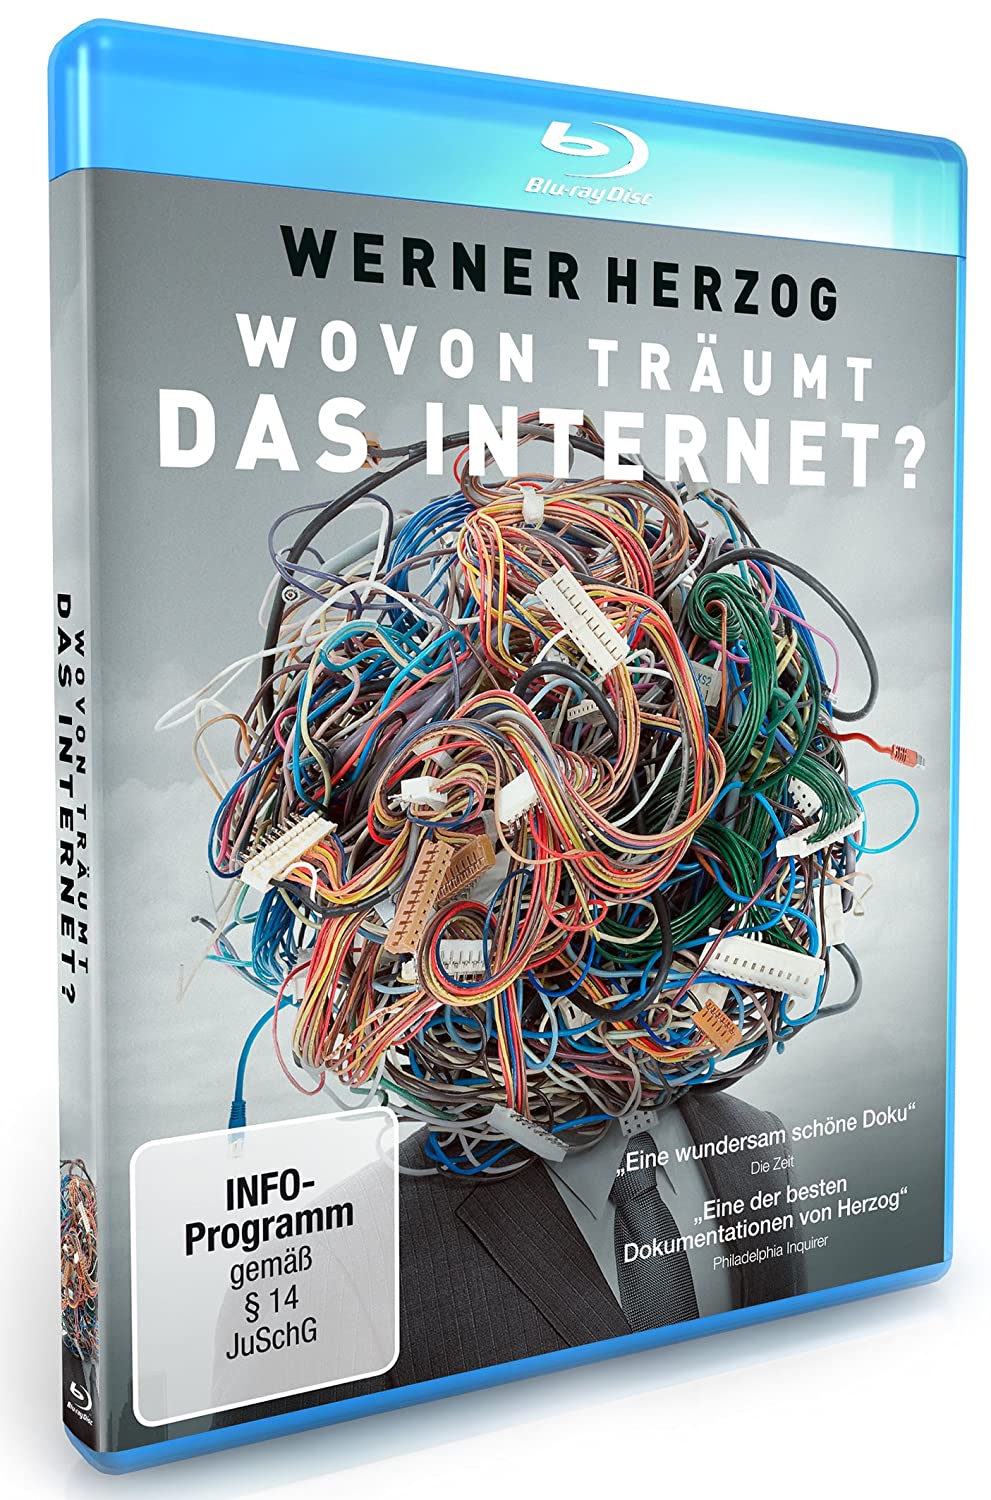 Wovon träumt das Internet? - Werner Herzog